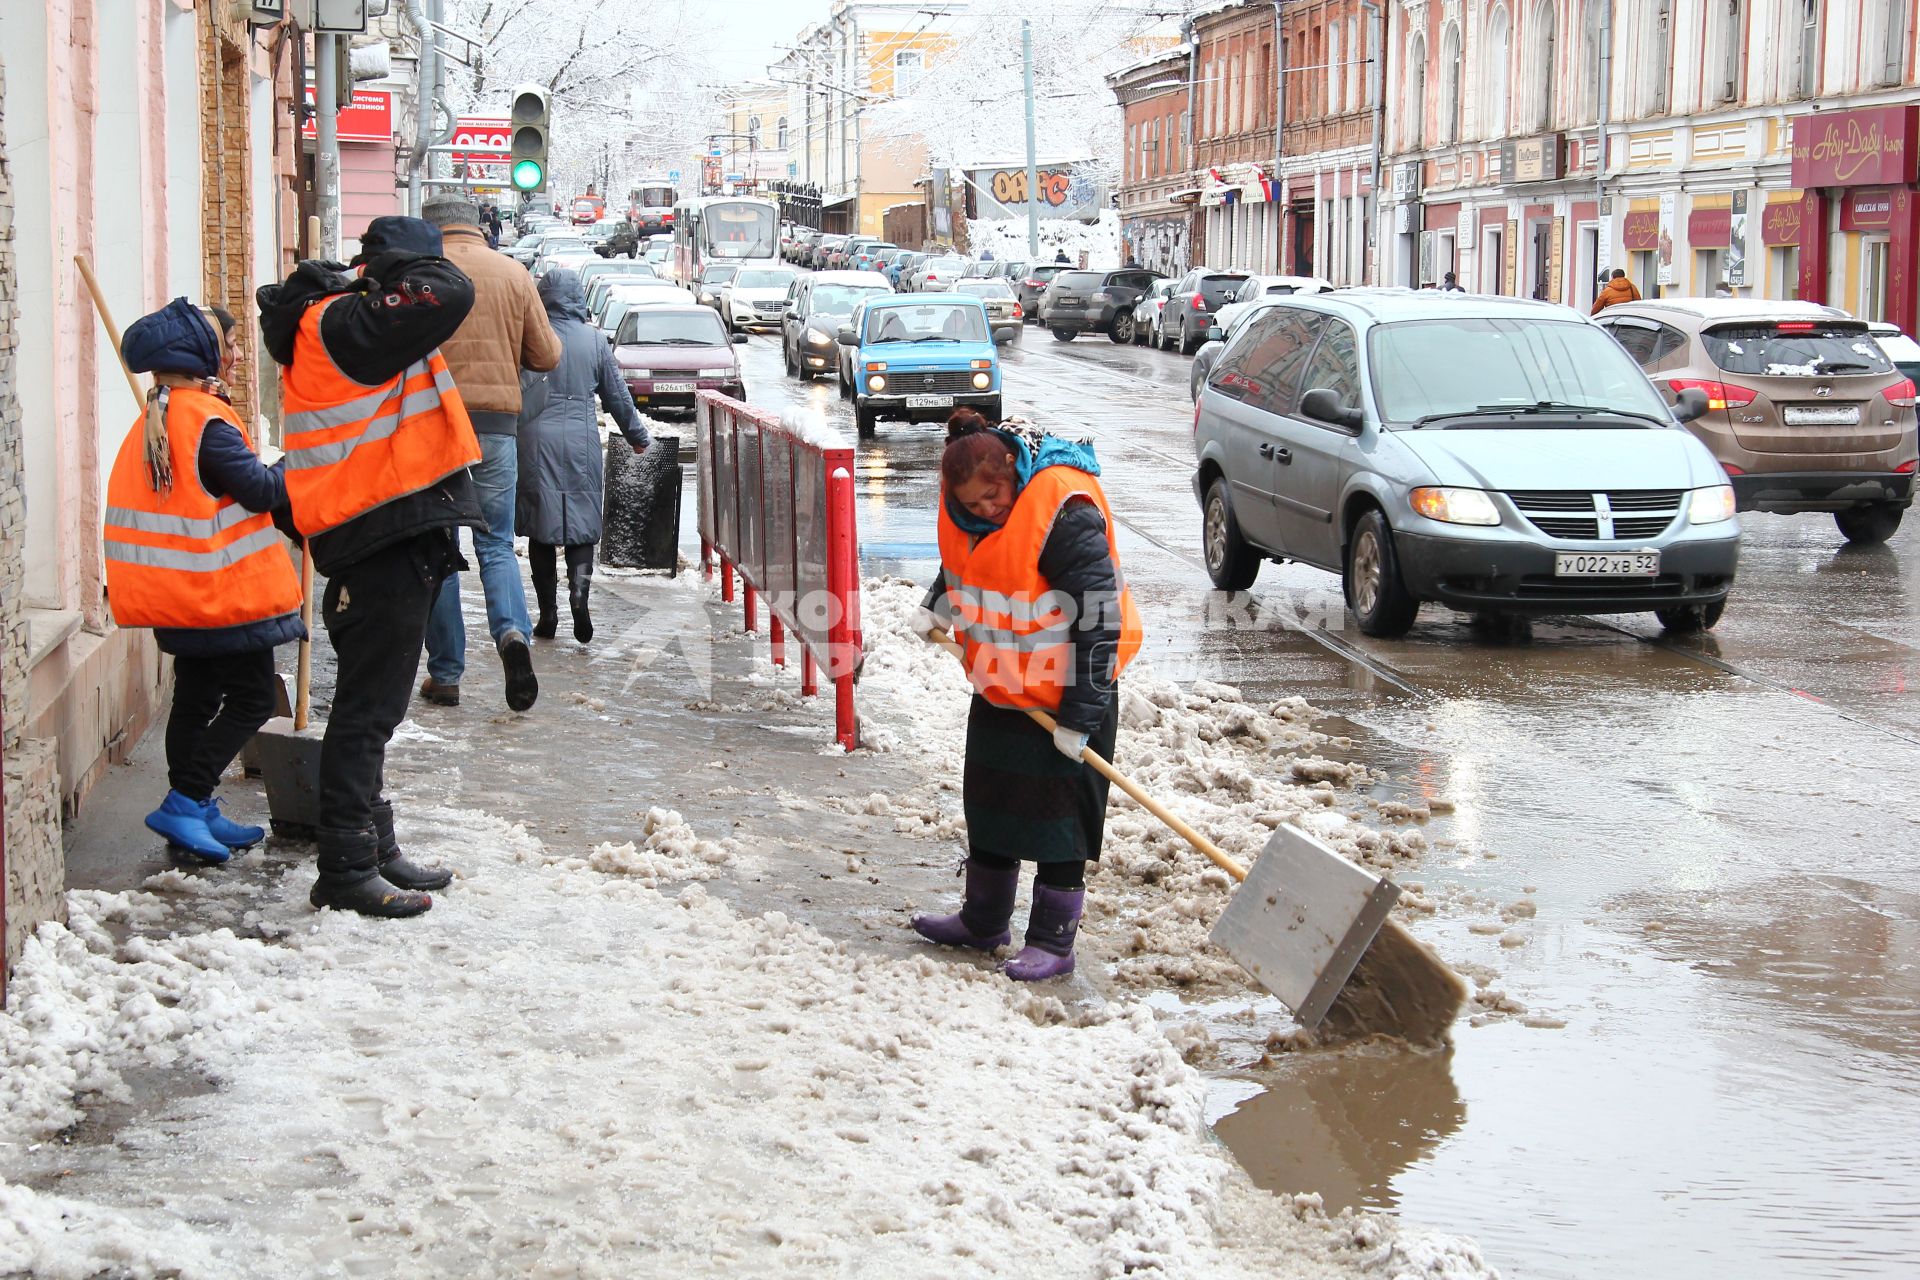 Нижний Новгород. Снегопад в апреле. Дворники очищают смотровую площадку от снега.